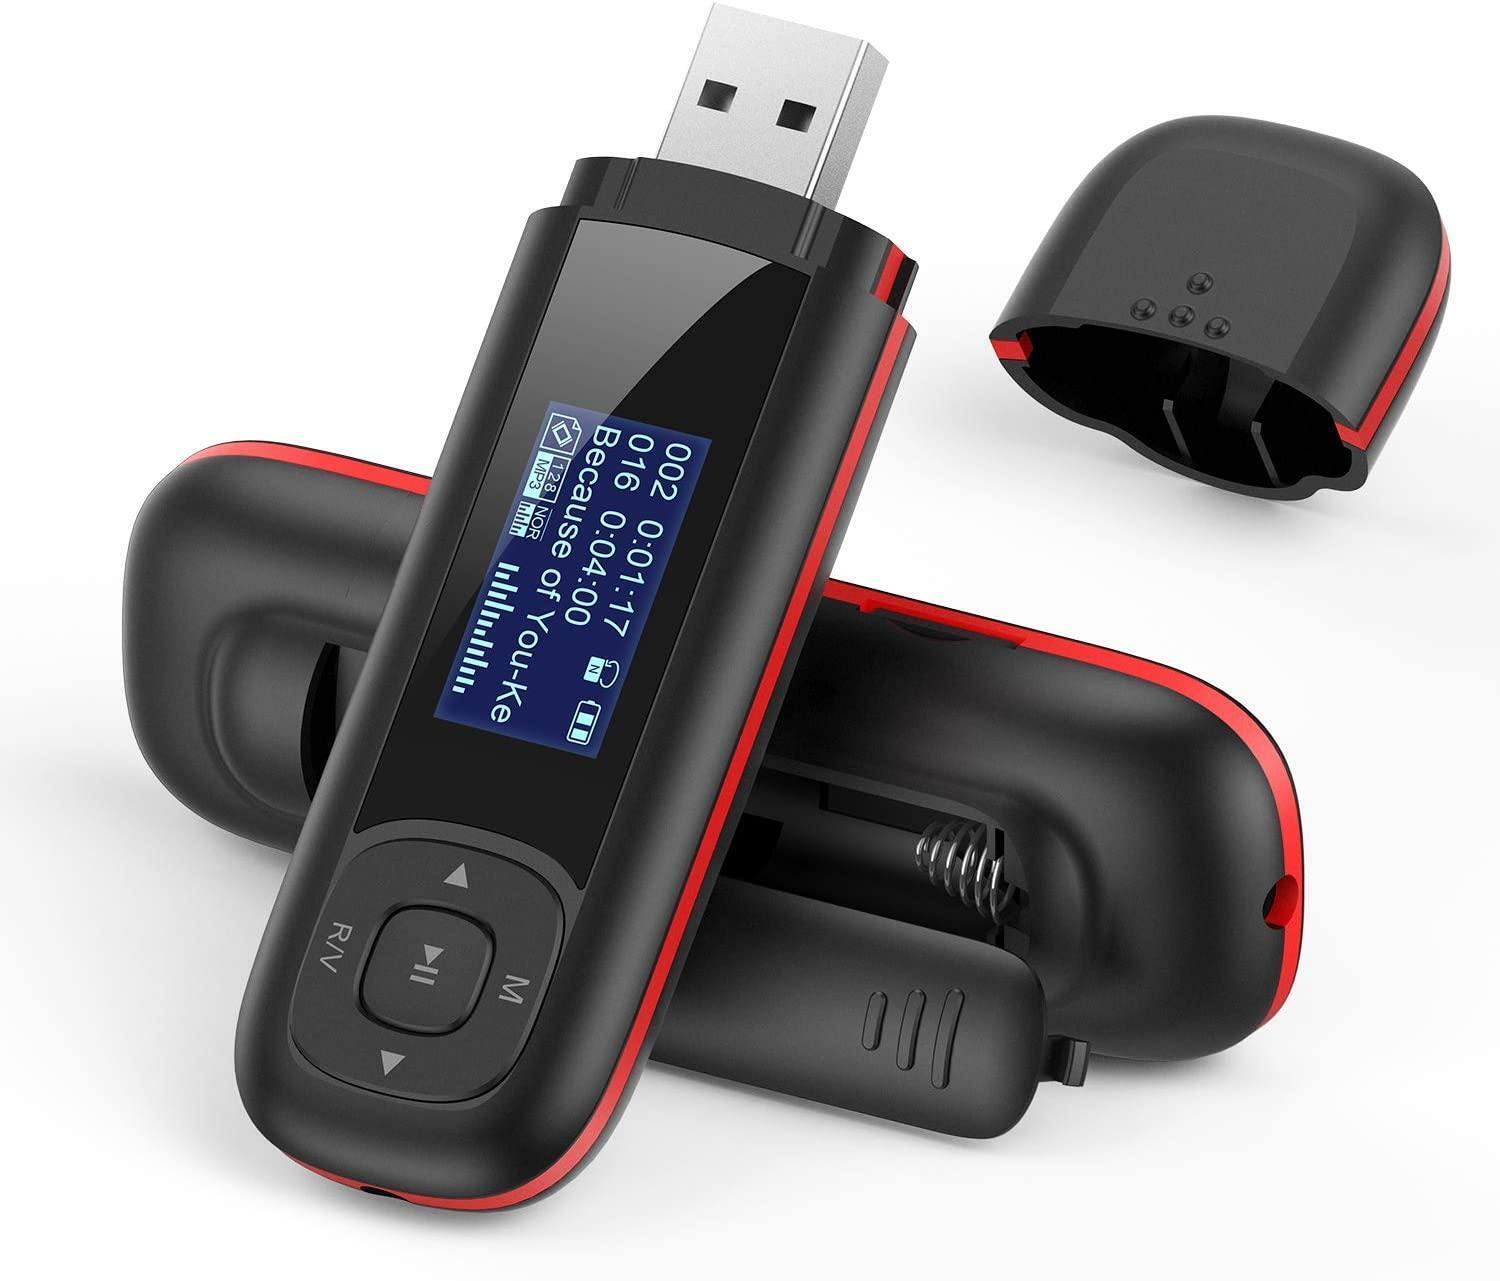 AGPTEK 8GB Tragbare USB MP3 Player 1 Zoll LCD Display USB Stick Mit FM Aufnahme